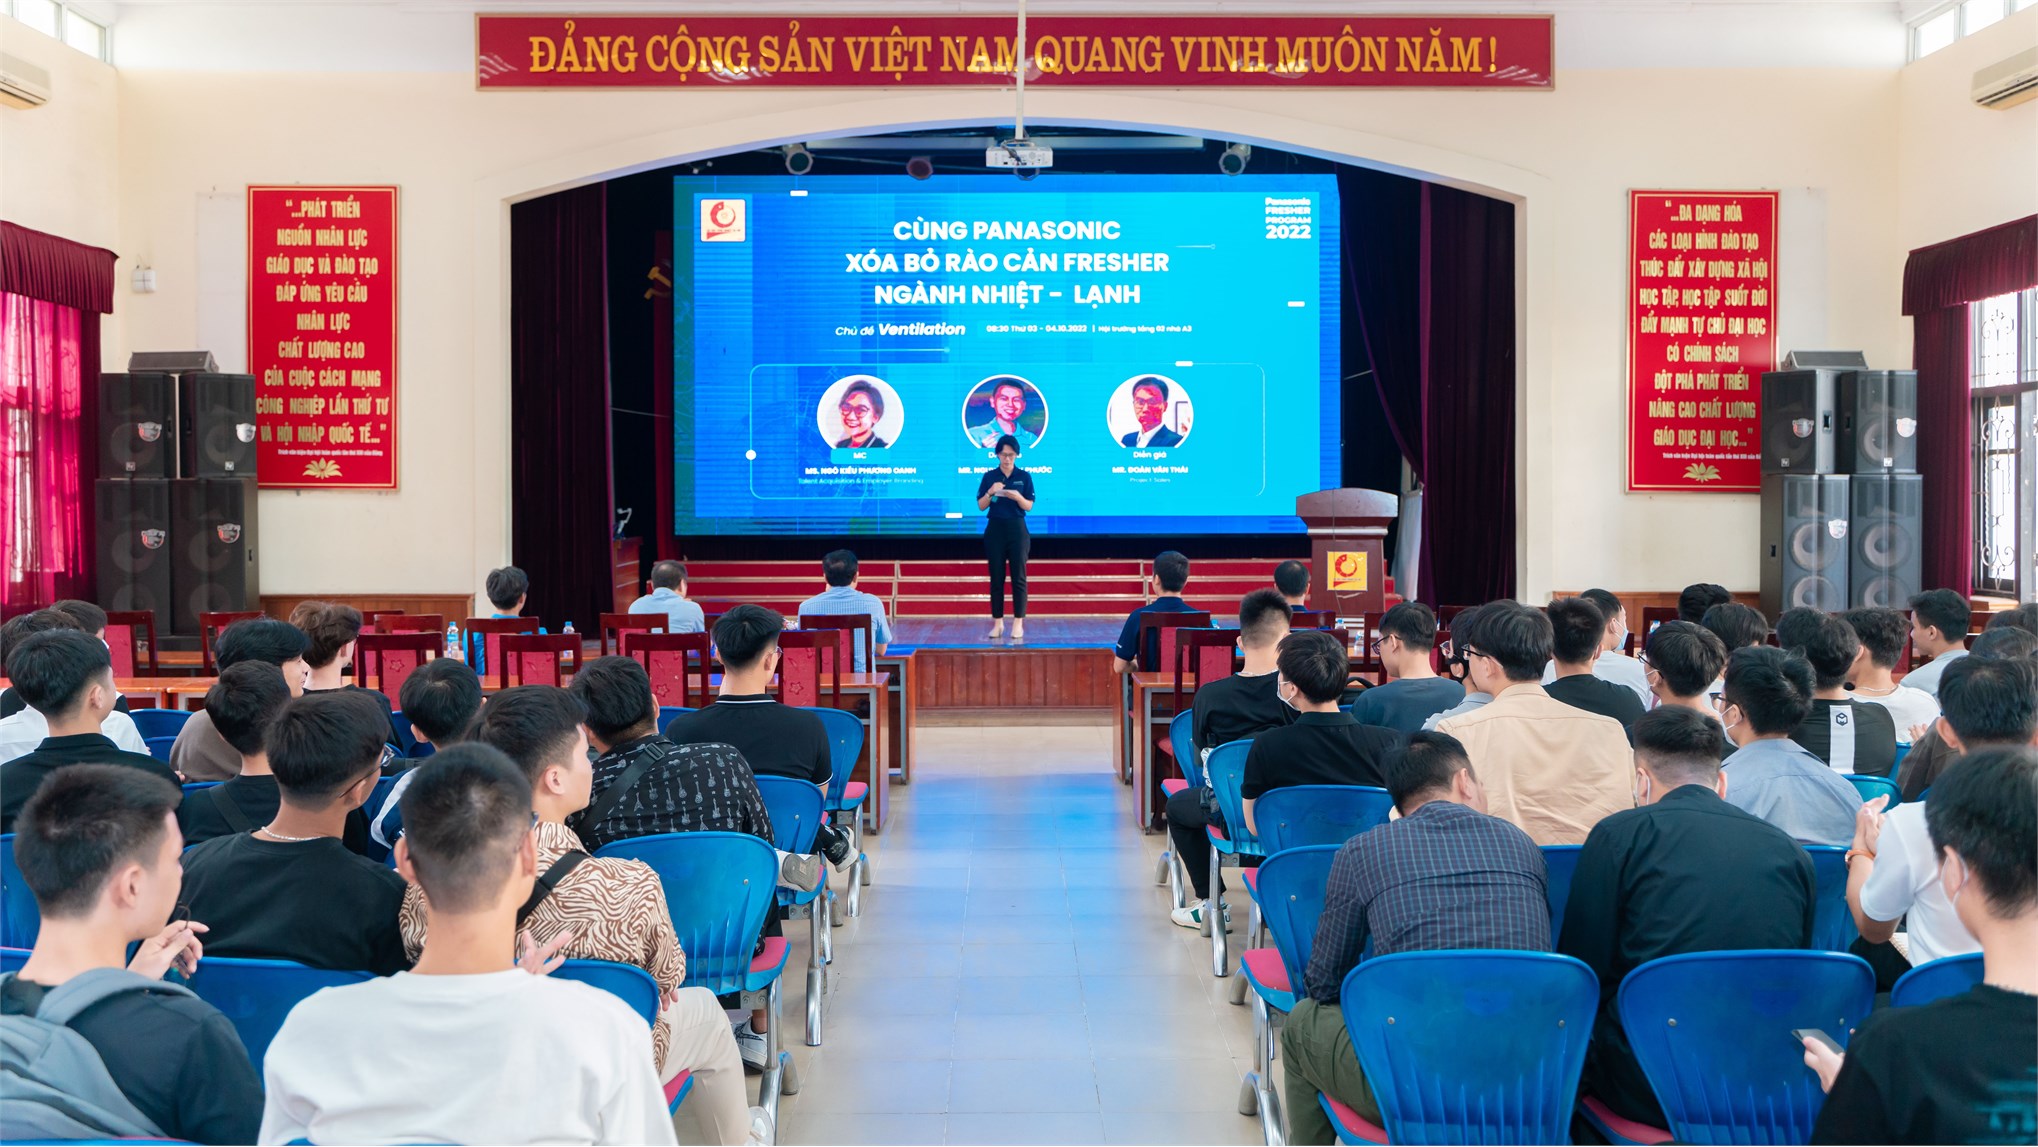 Hội thảo việc làm, hướng nghiệp cho sinh viên chuyên ngành Nhiệt của Công ty TNHH Panasonic Việt Nam